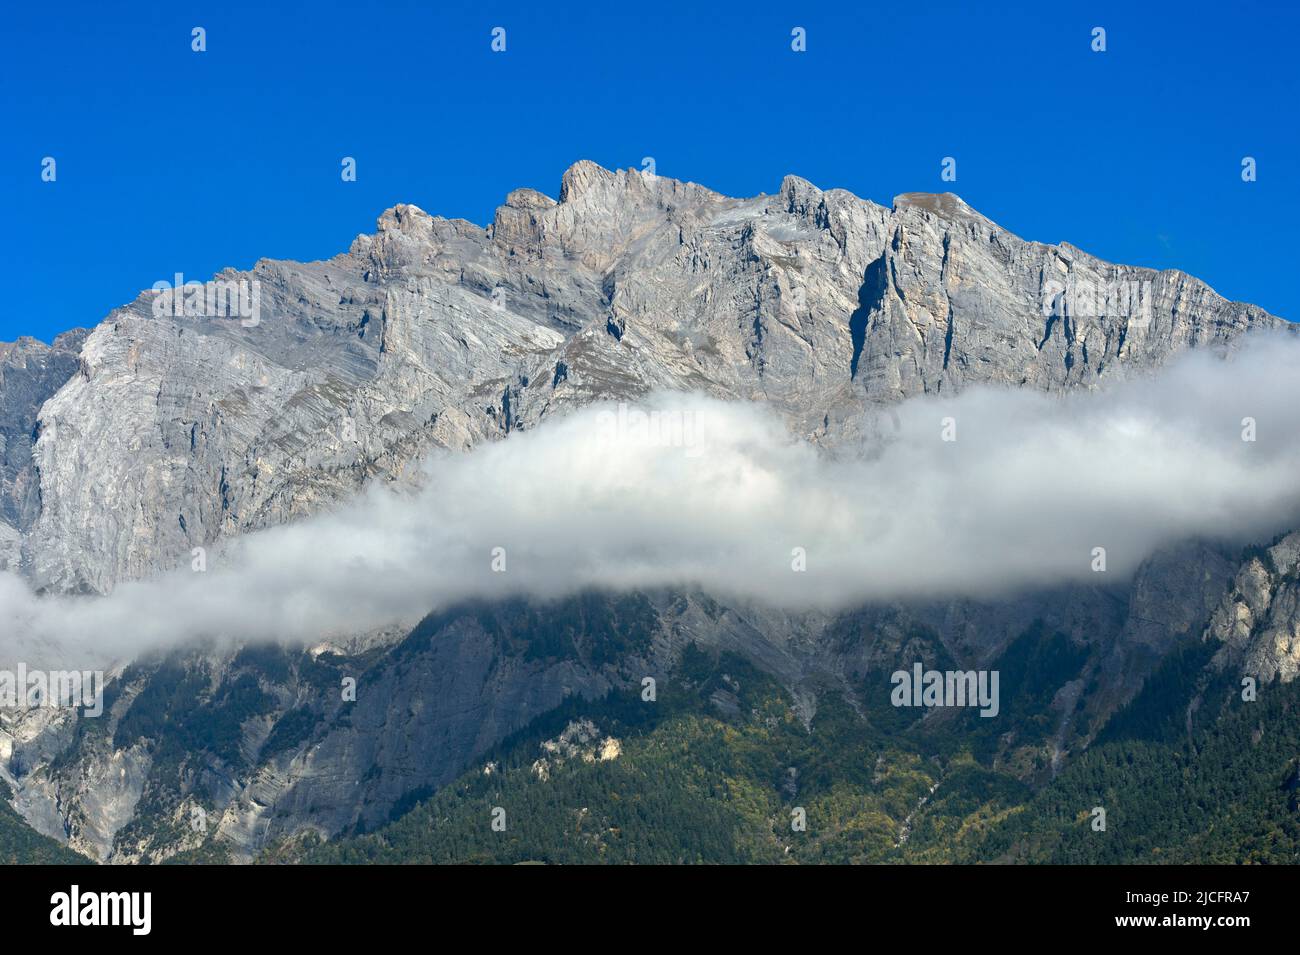 Rive nuageuse en face du massif montagneux accidenté du Haut de Cry, Chamoson, Valais, Suisse Banque D'Images